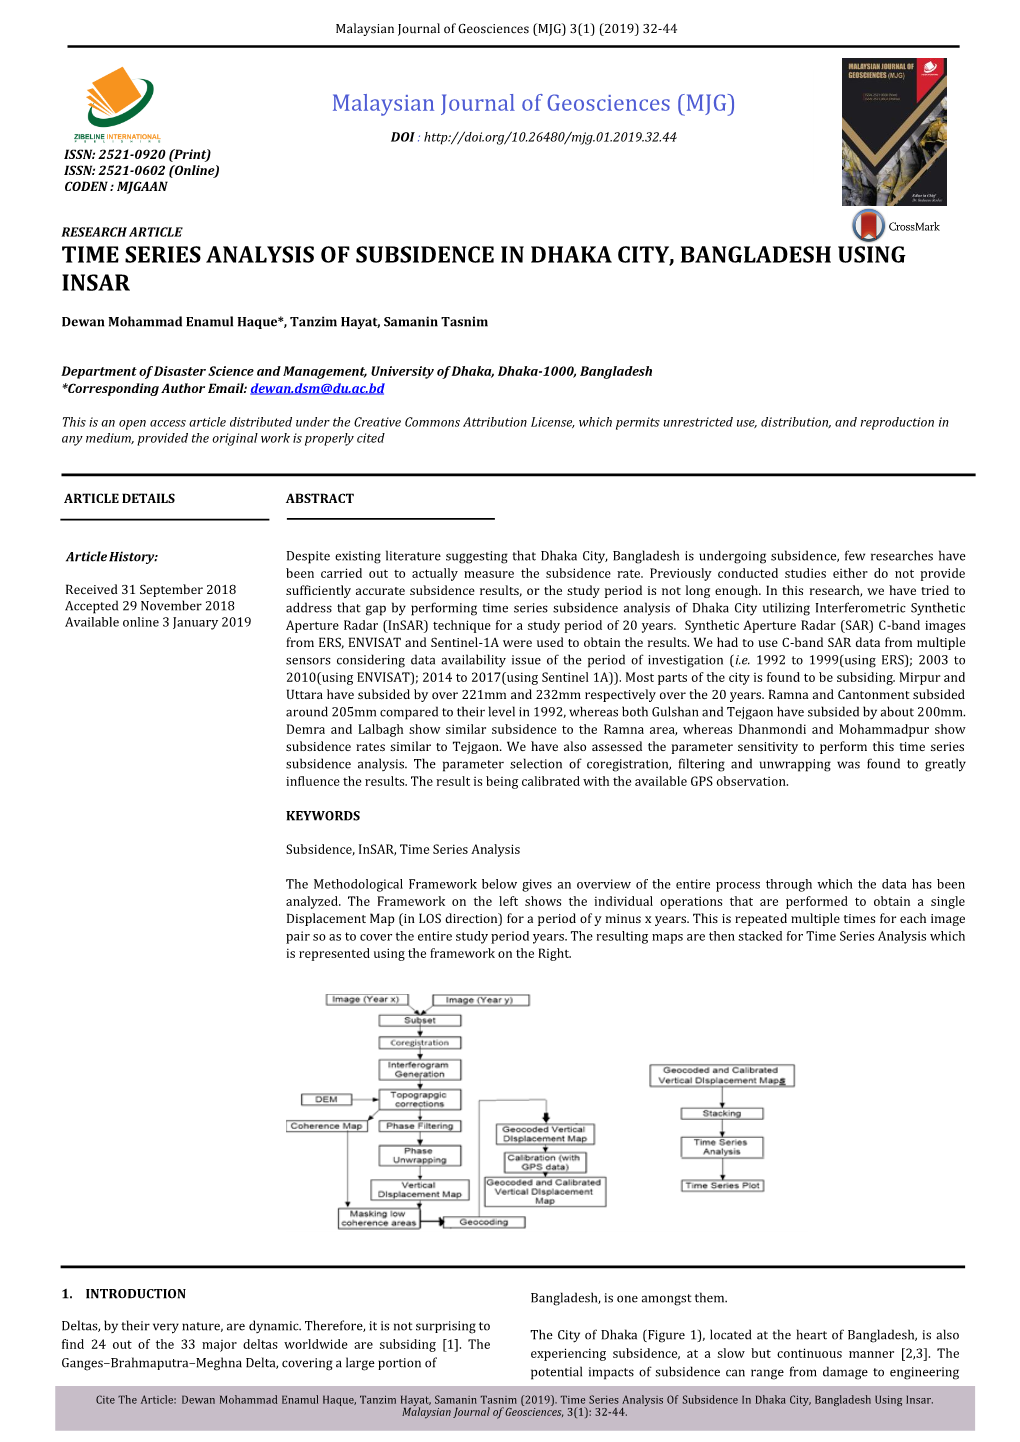 Time Series Analysis of Subsidence in Dhaka City, Bangladesh Using Insar